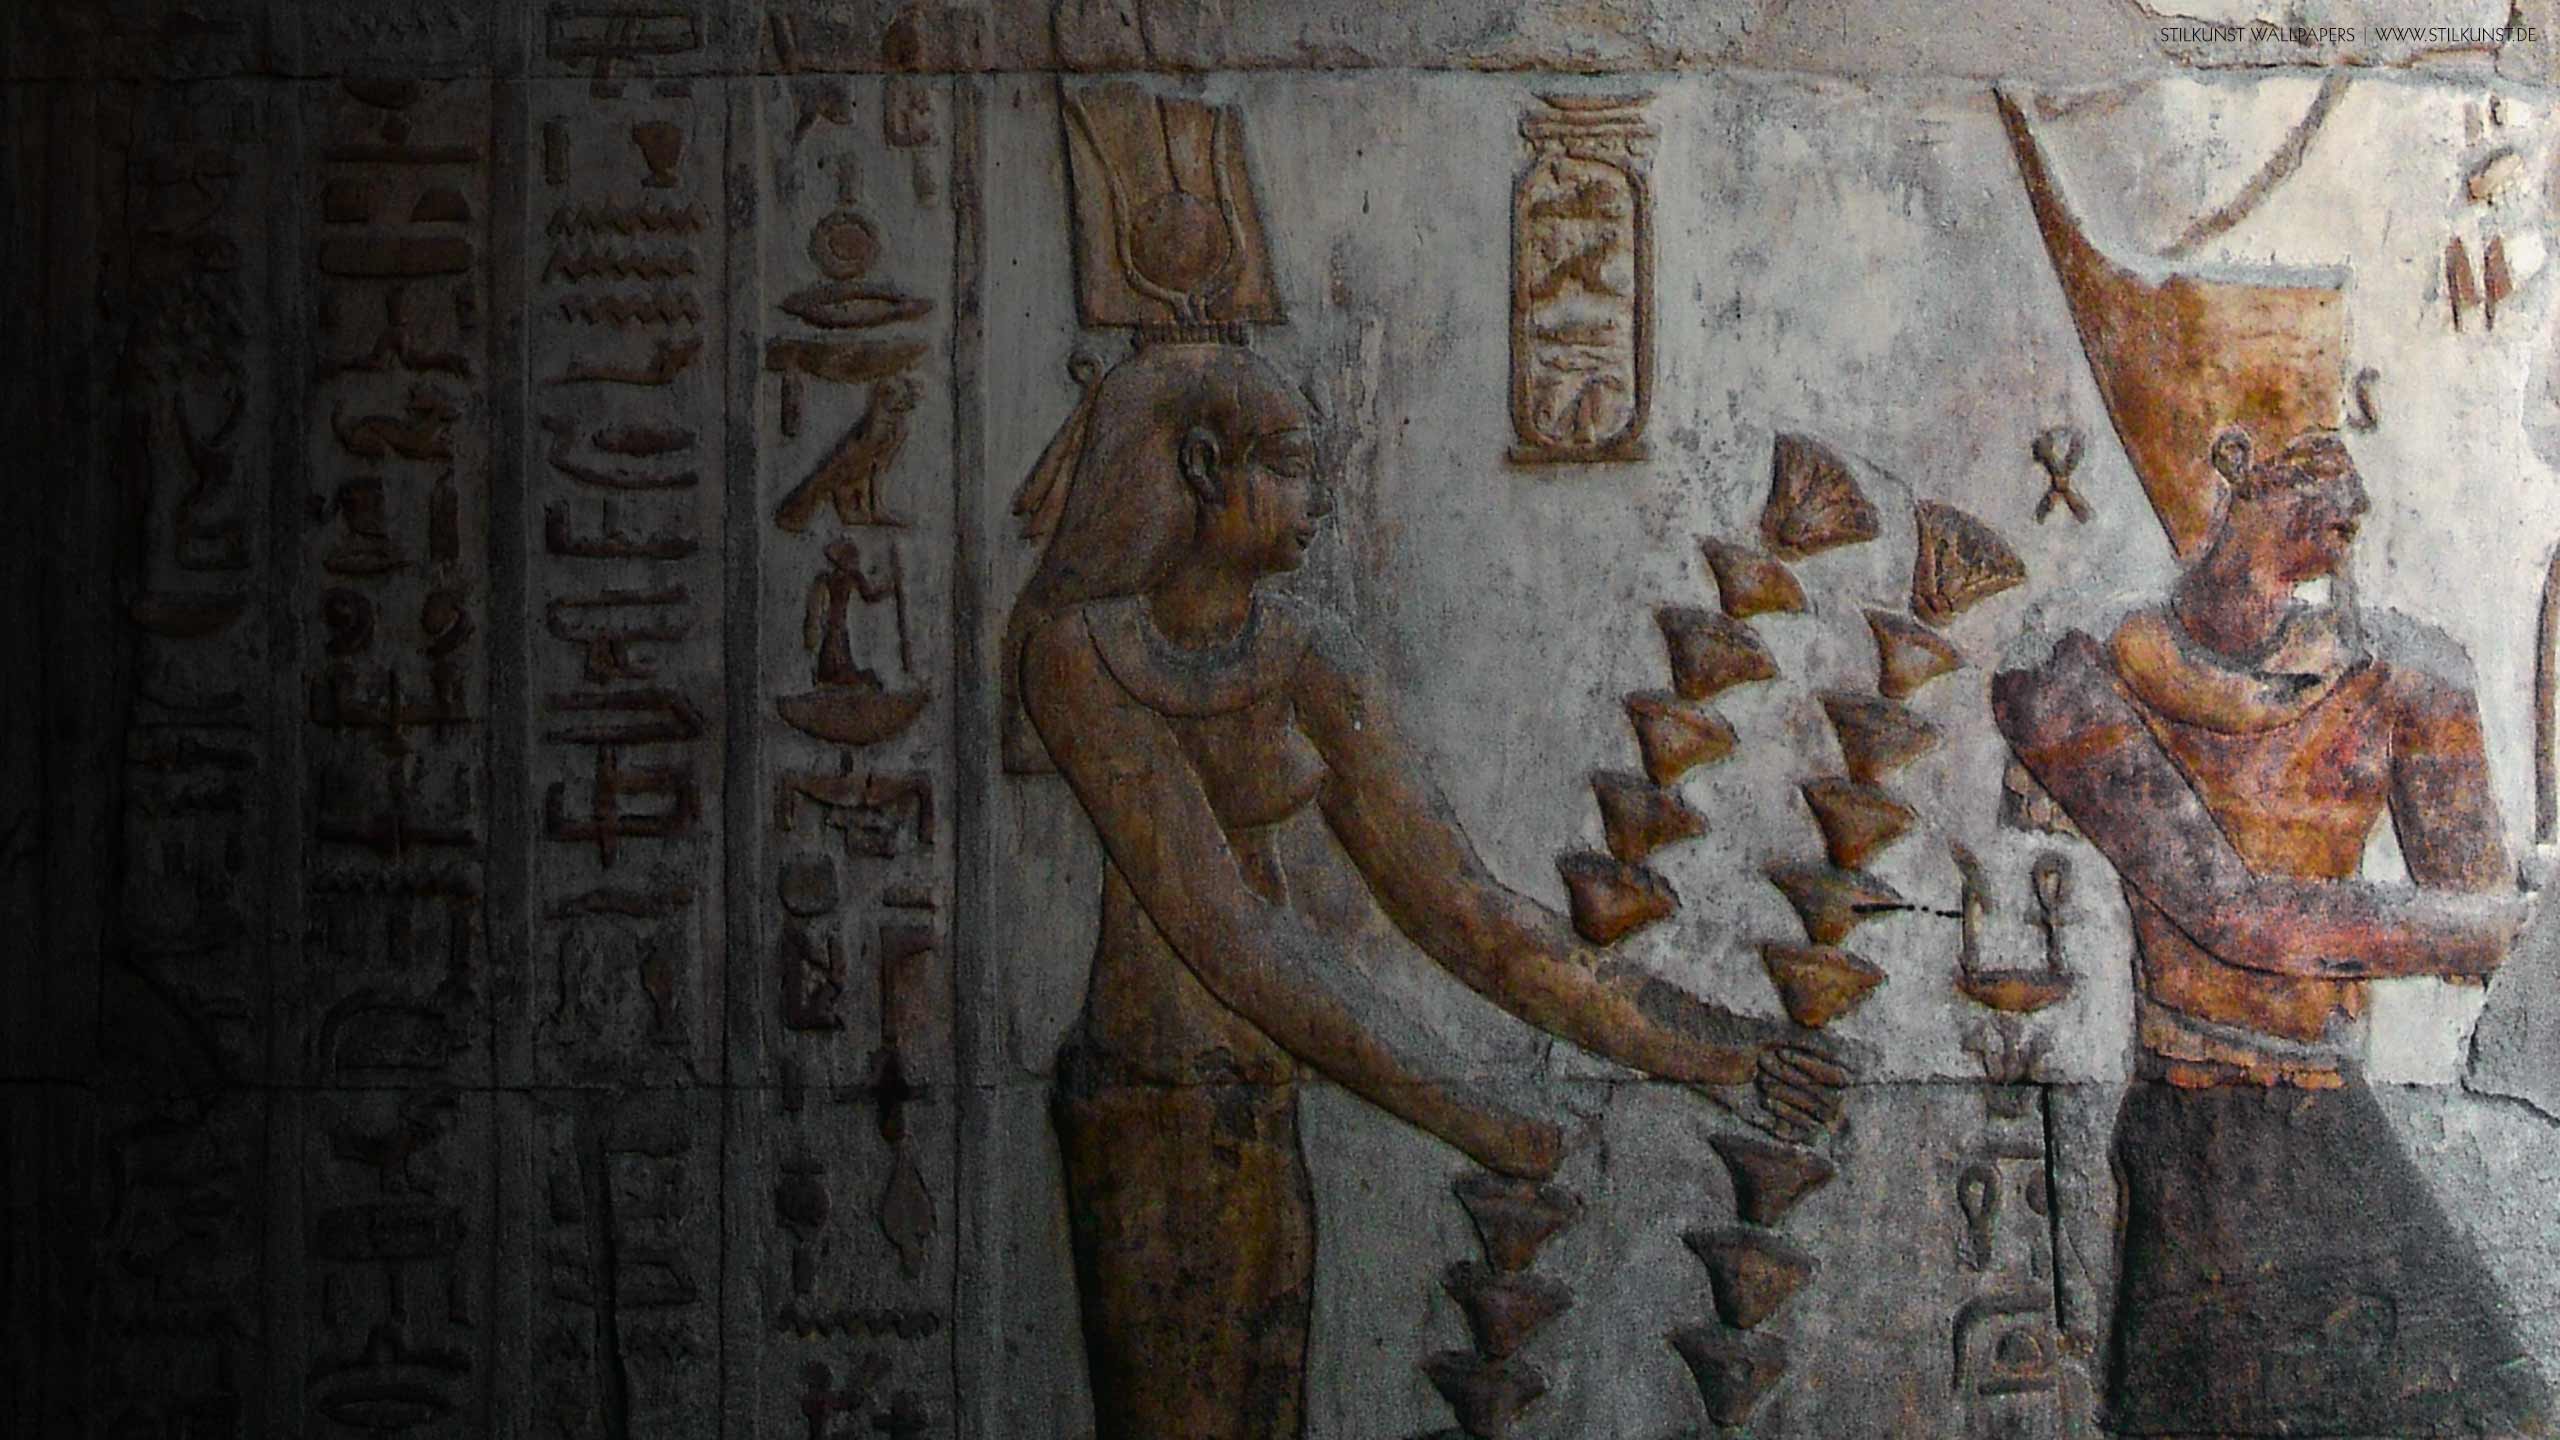 Ptolemaios VI. und Kleopatra II. | 2560 x 1440px | Bild: ©by Sabrina | Reiner | www.stilkunst.de | Lizenz: CC BY-SA